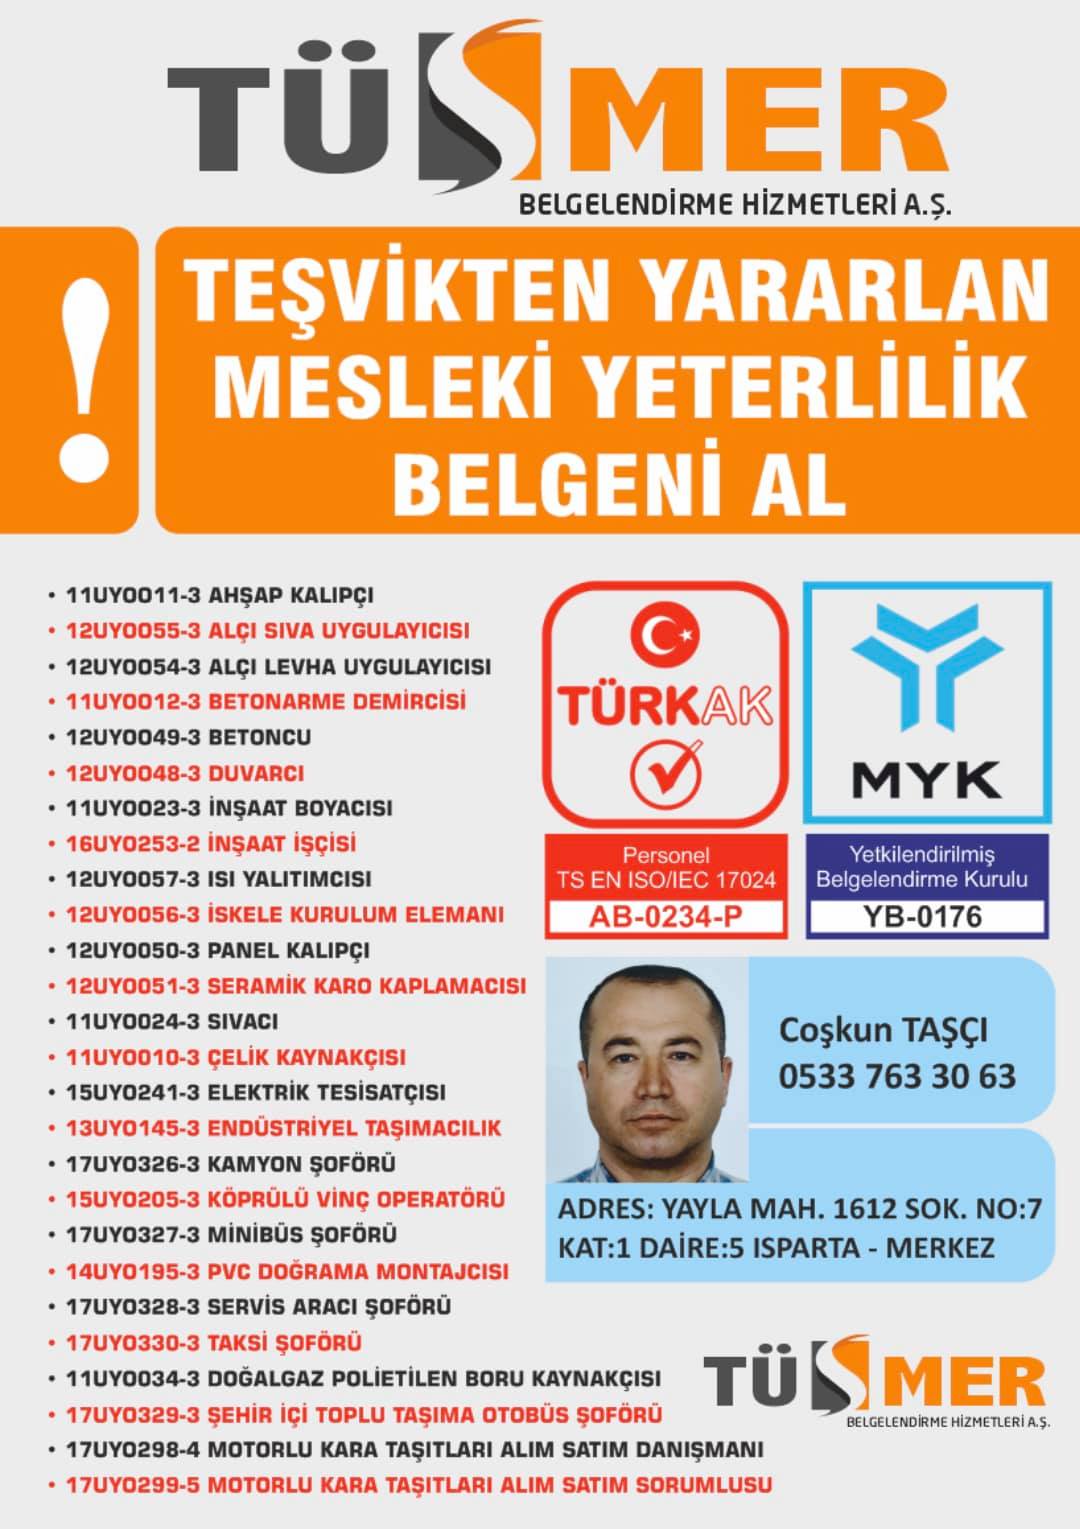 MYK MESLEKİ YETERLİLİK BELGESİ Hastane İstanbul